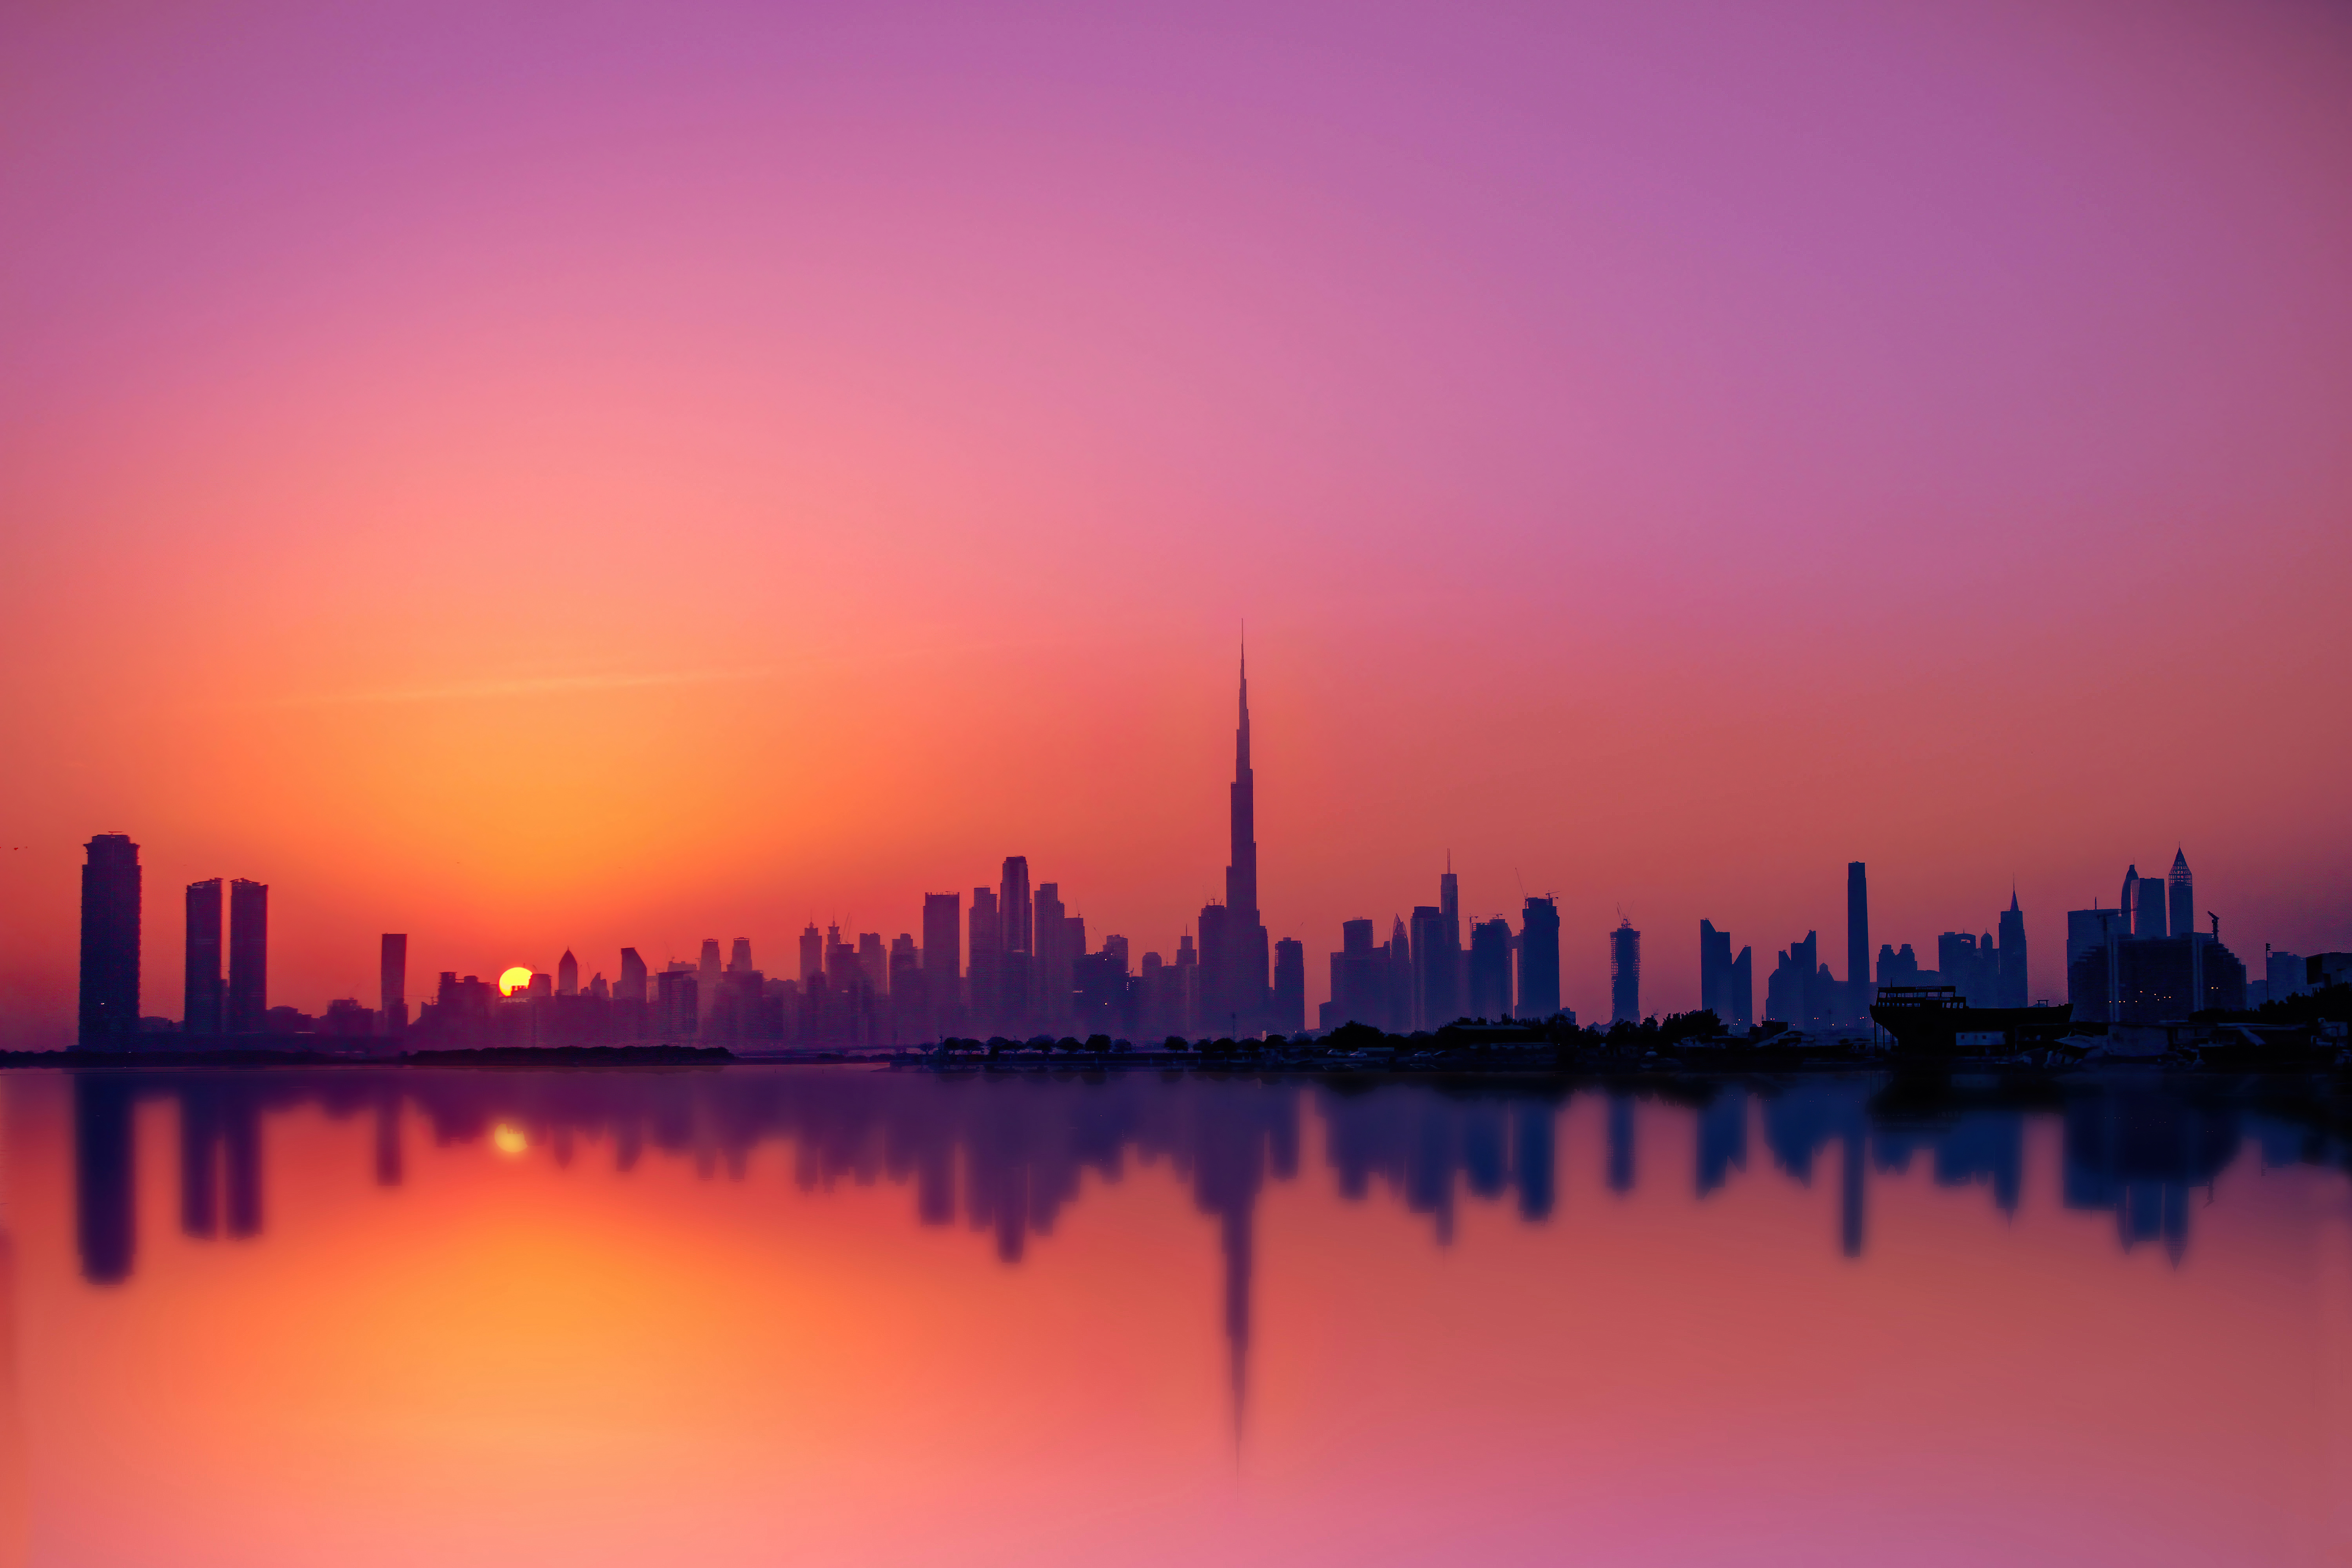 dubai city silhouette 4k 1629228077 - Dubai City Silhouette 4k - Dubai City Silhouette wallpapers, Dubai City Silhouette 4k wallpapers